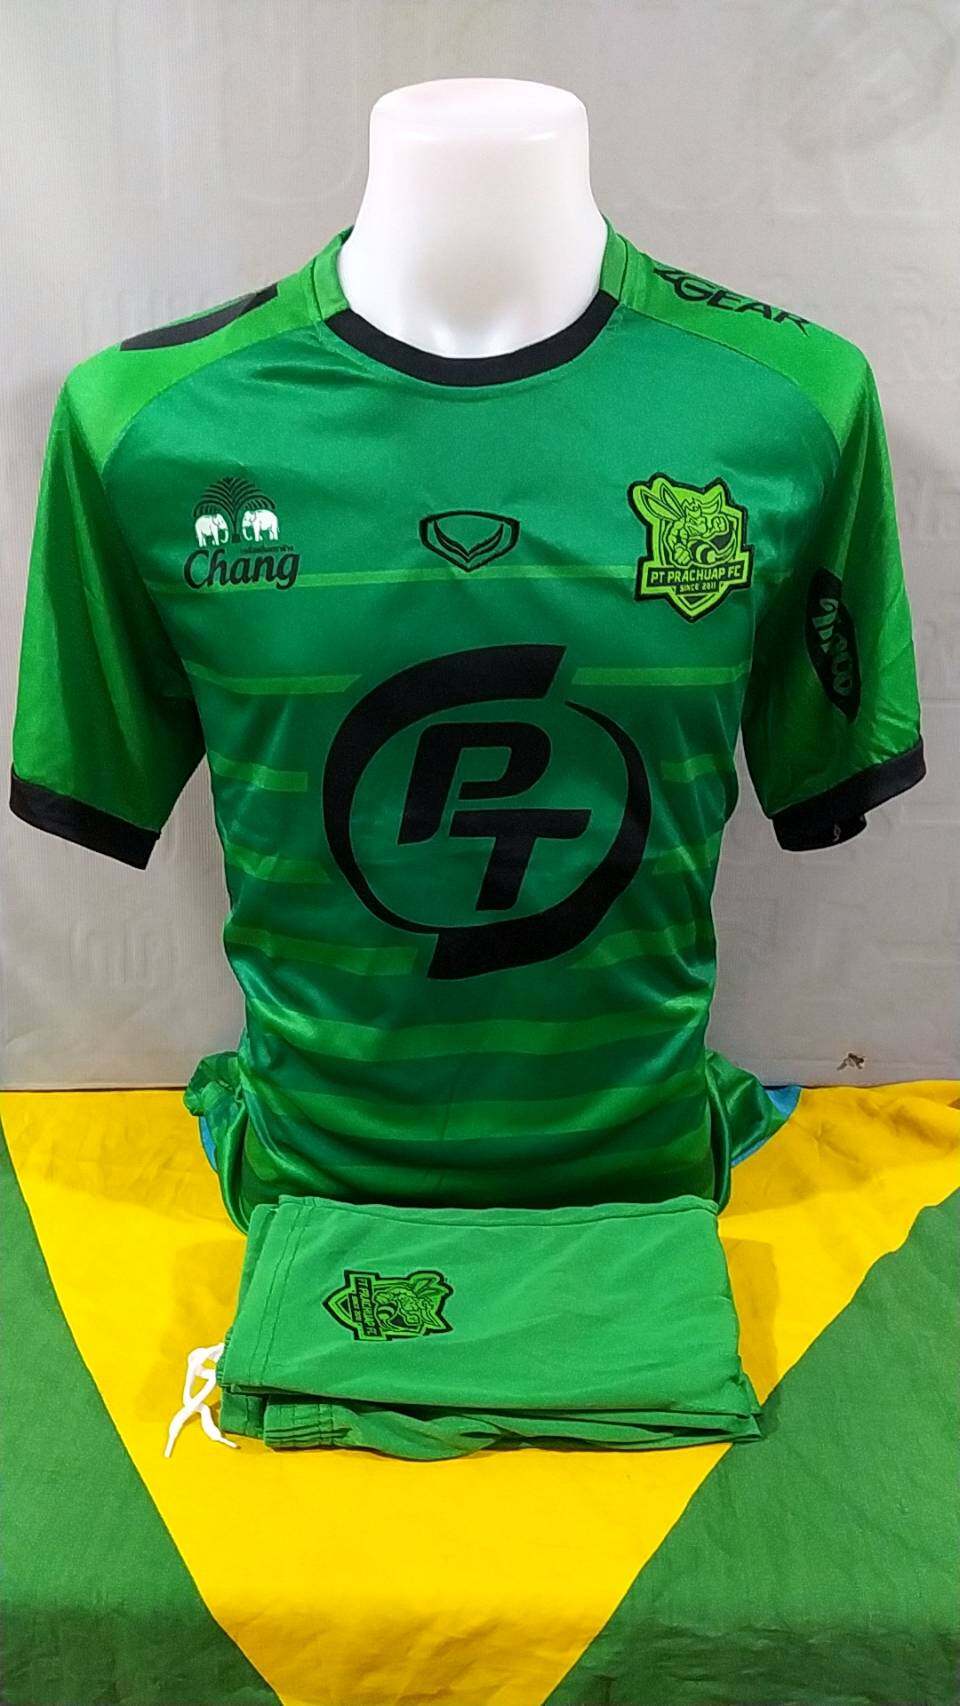 ⚽เสื้อกีฬาผู้ชายทีมพีที ประจวบ/PT Prachuap FC ตัวใหม่ล่าสุดฤดูกาล 2021-2022 ทีมเยือน ราคาถูก